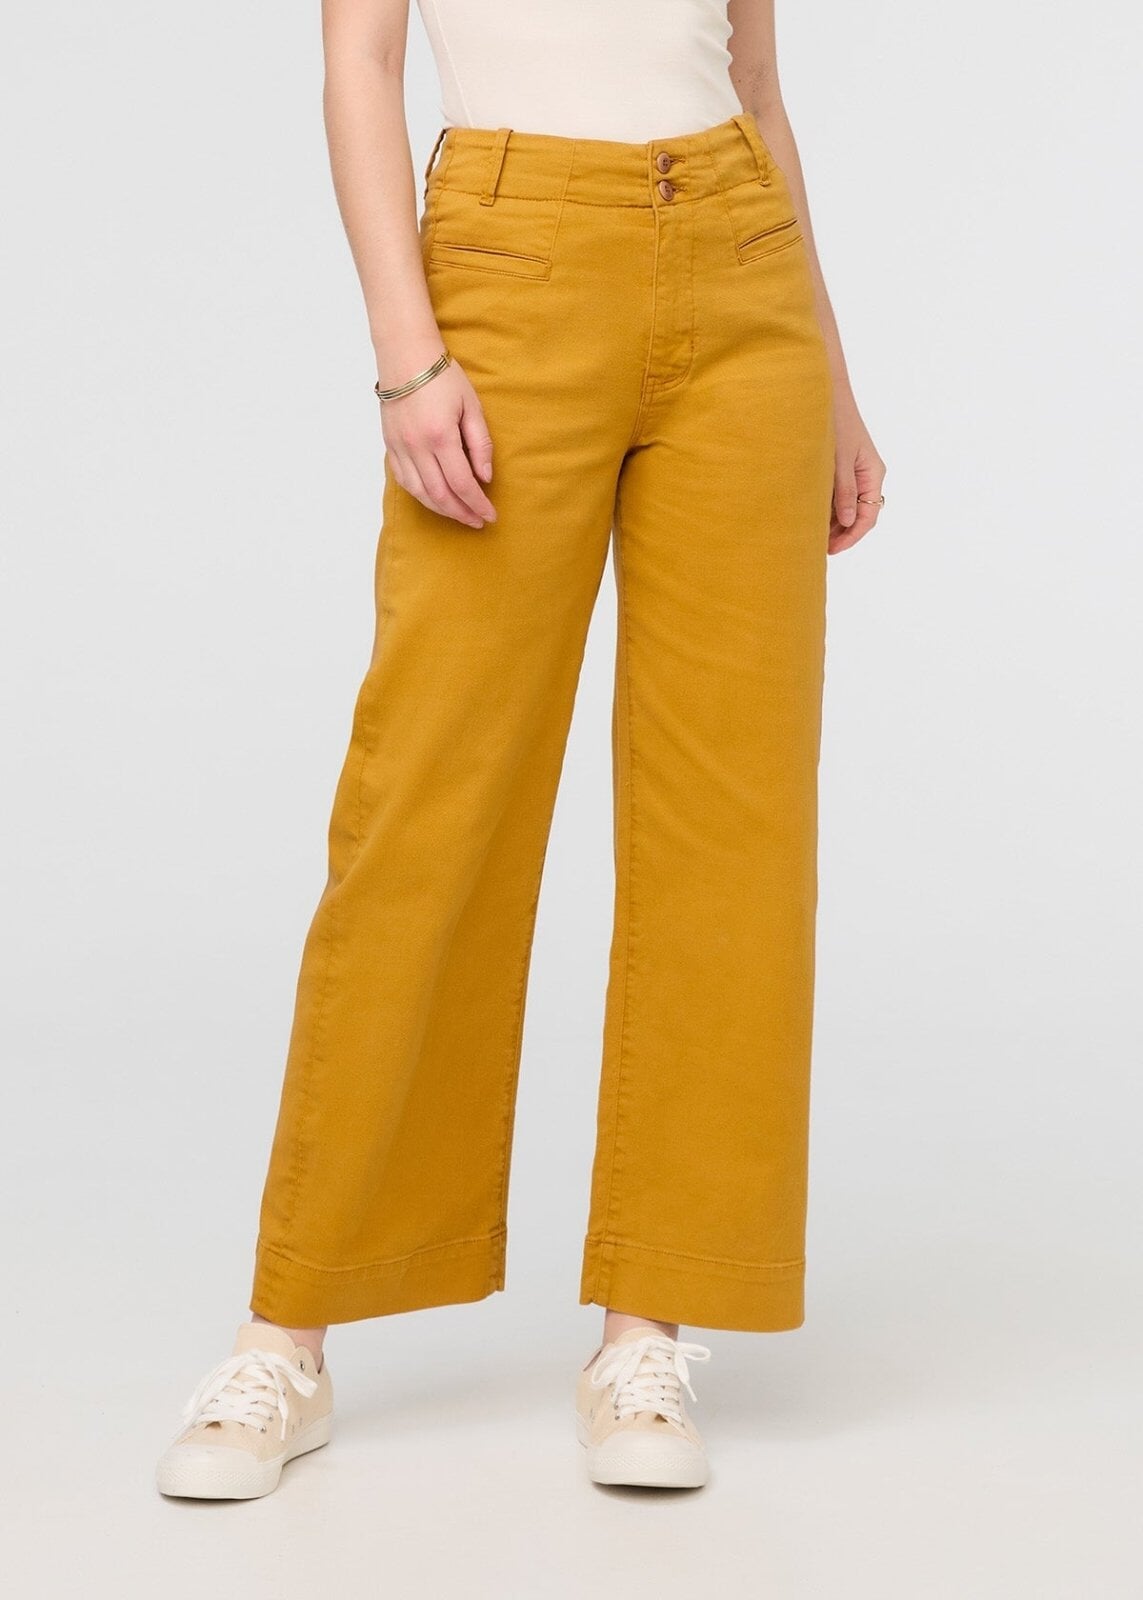 Buy Lemon Yellow Trousers & Pants for Women by Encrustd Online